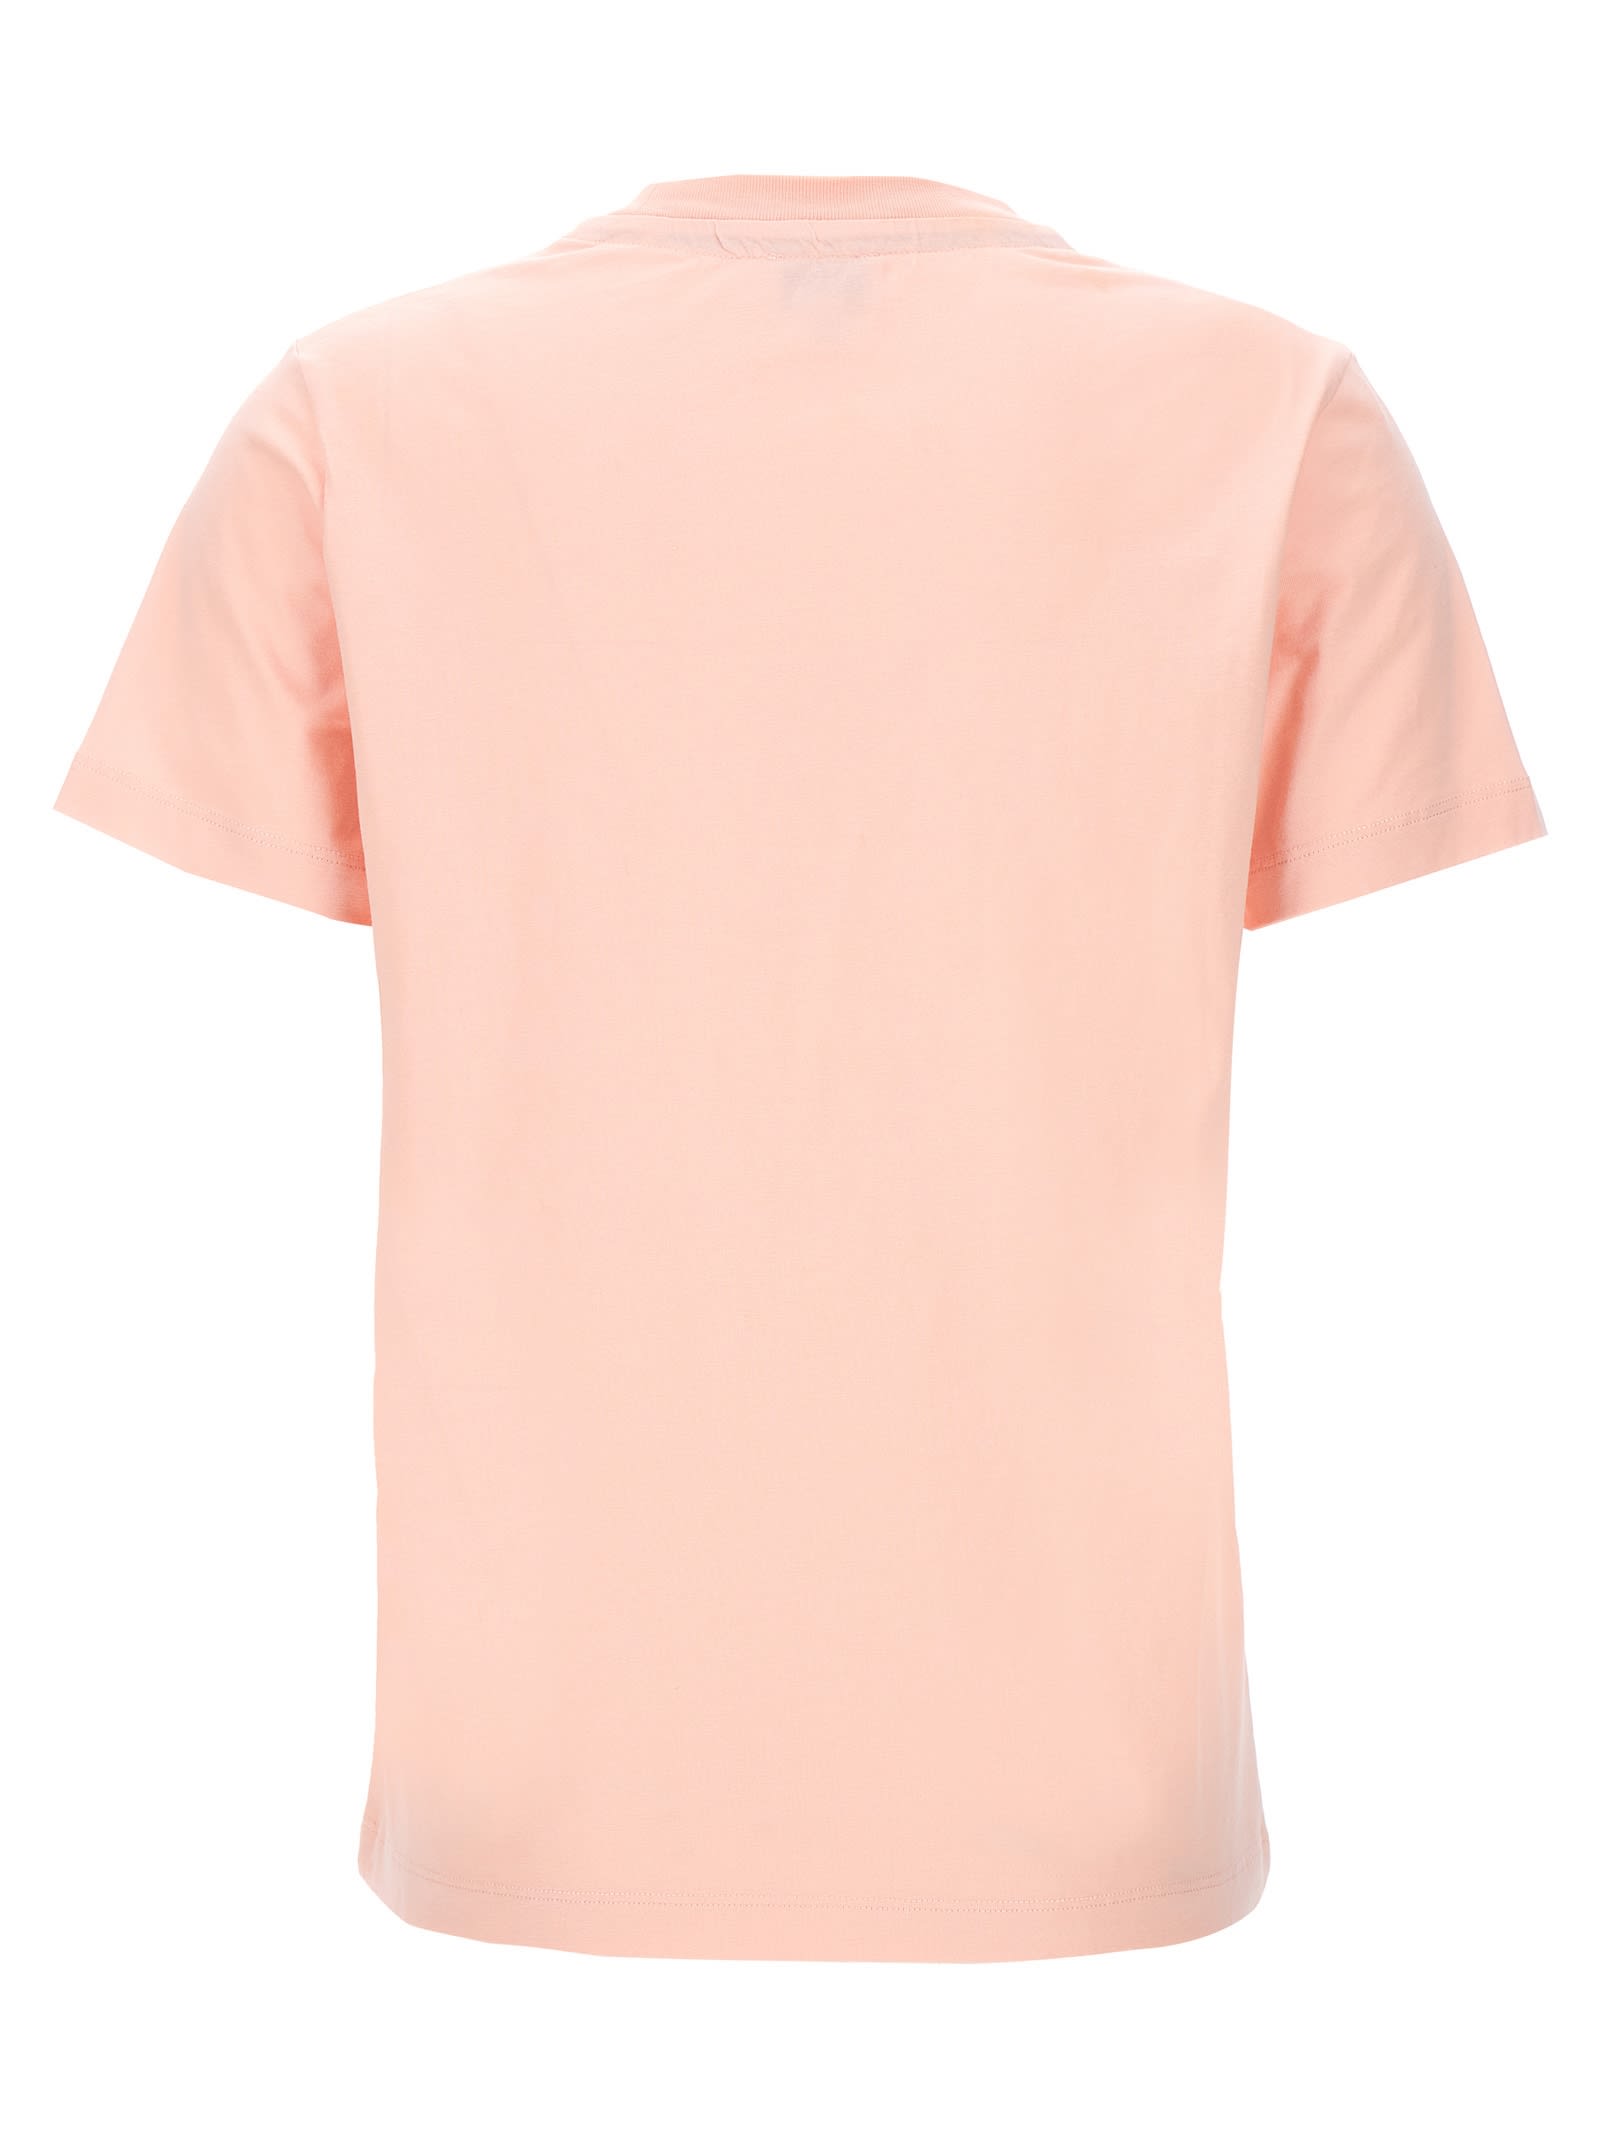 Shop Kenzo Logo T-shirt In Pink